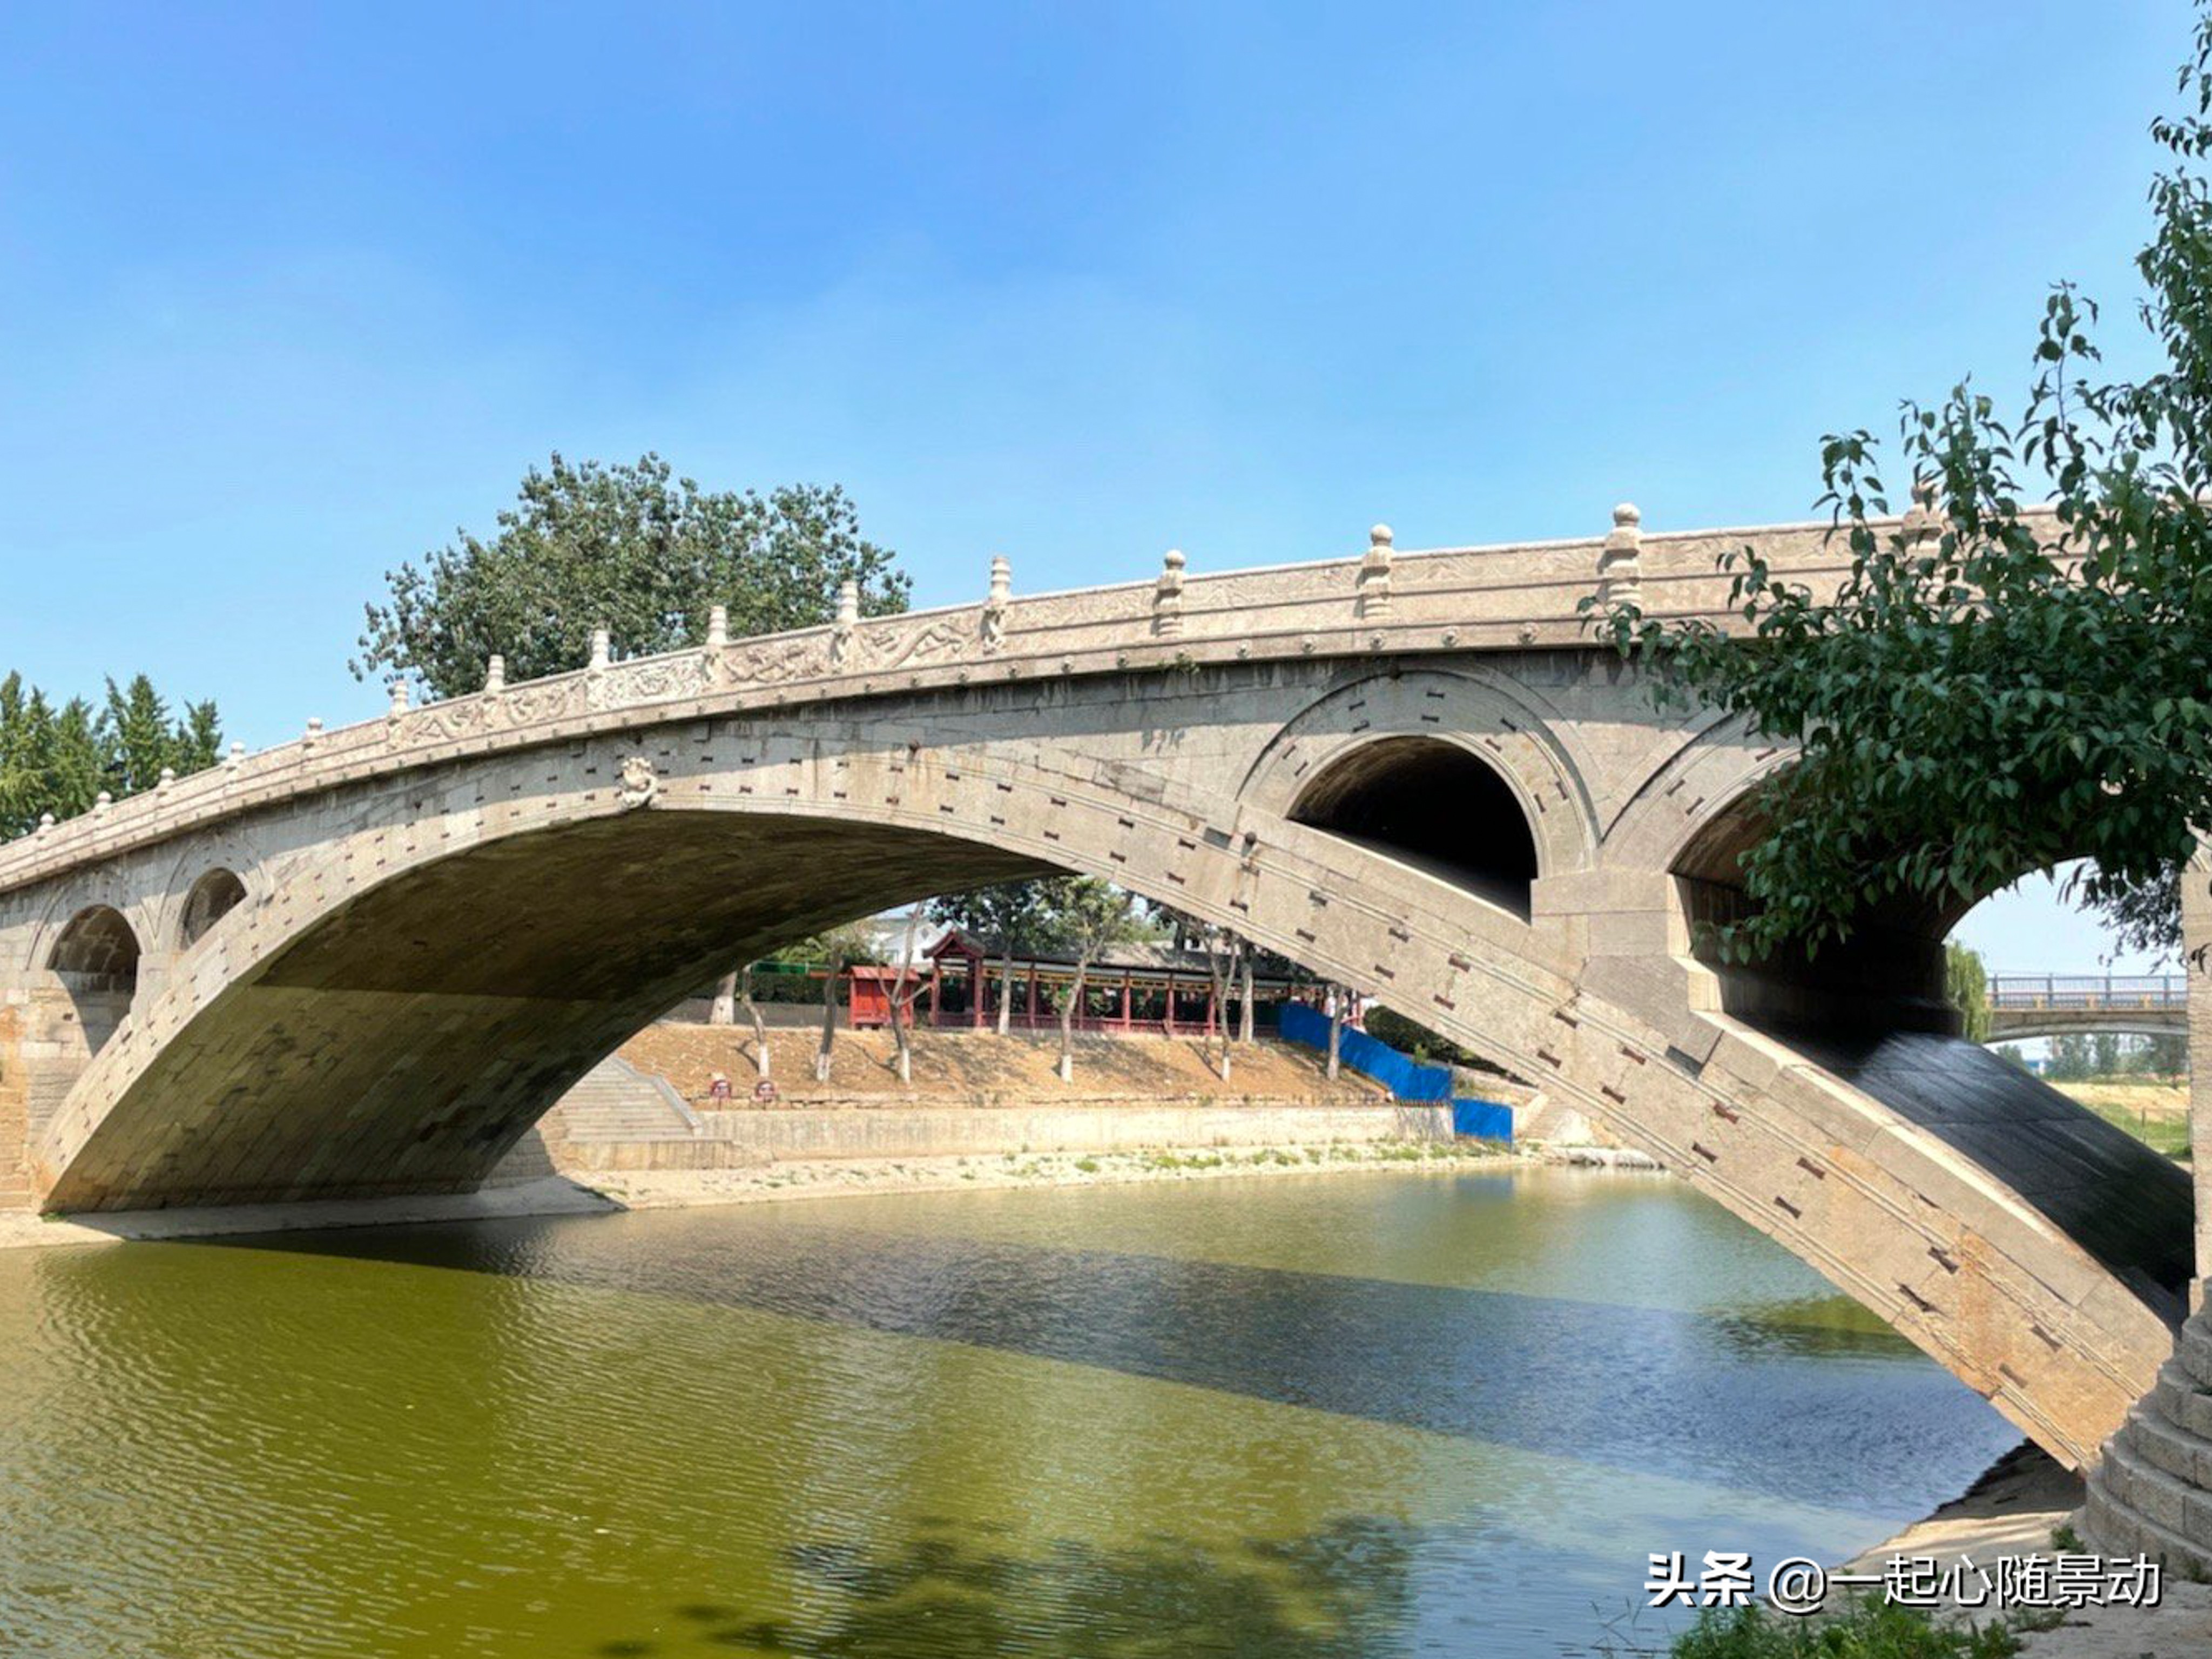 看到赵州桥后发现这座桥造型非常经典,但是整个桥梁看起来非常新,不仅